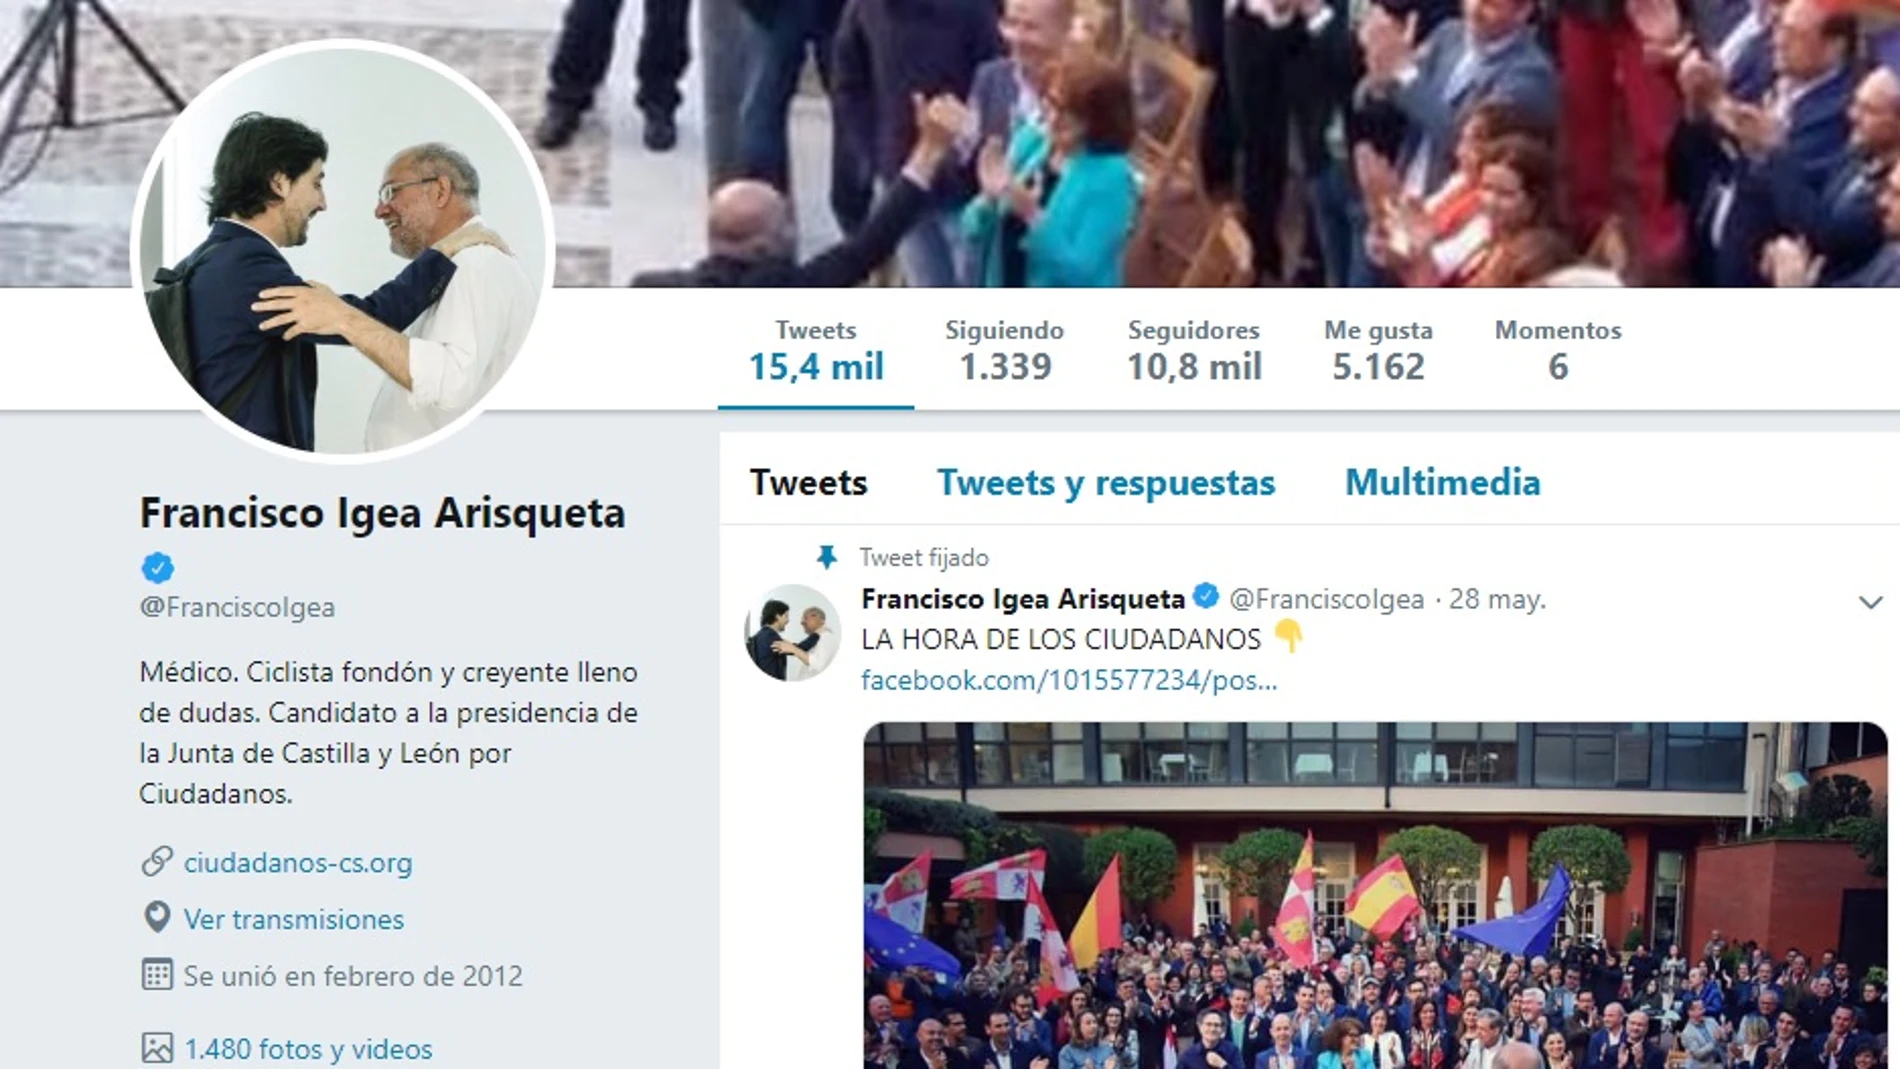 Imagen del perfil de Twitter de Francisco Igea